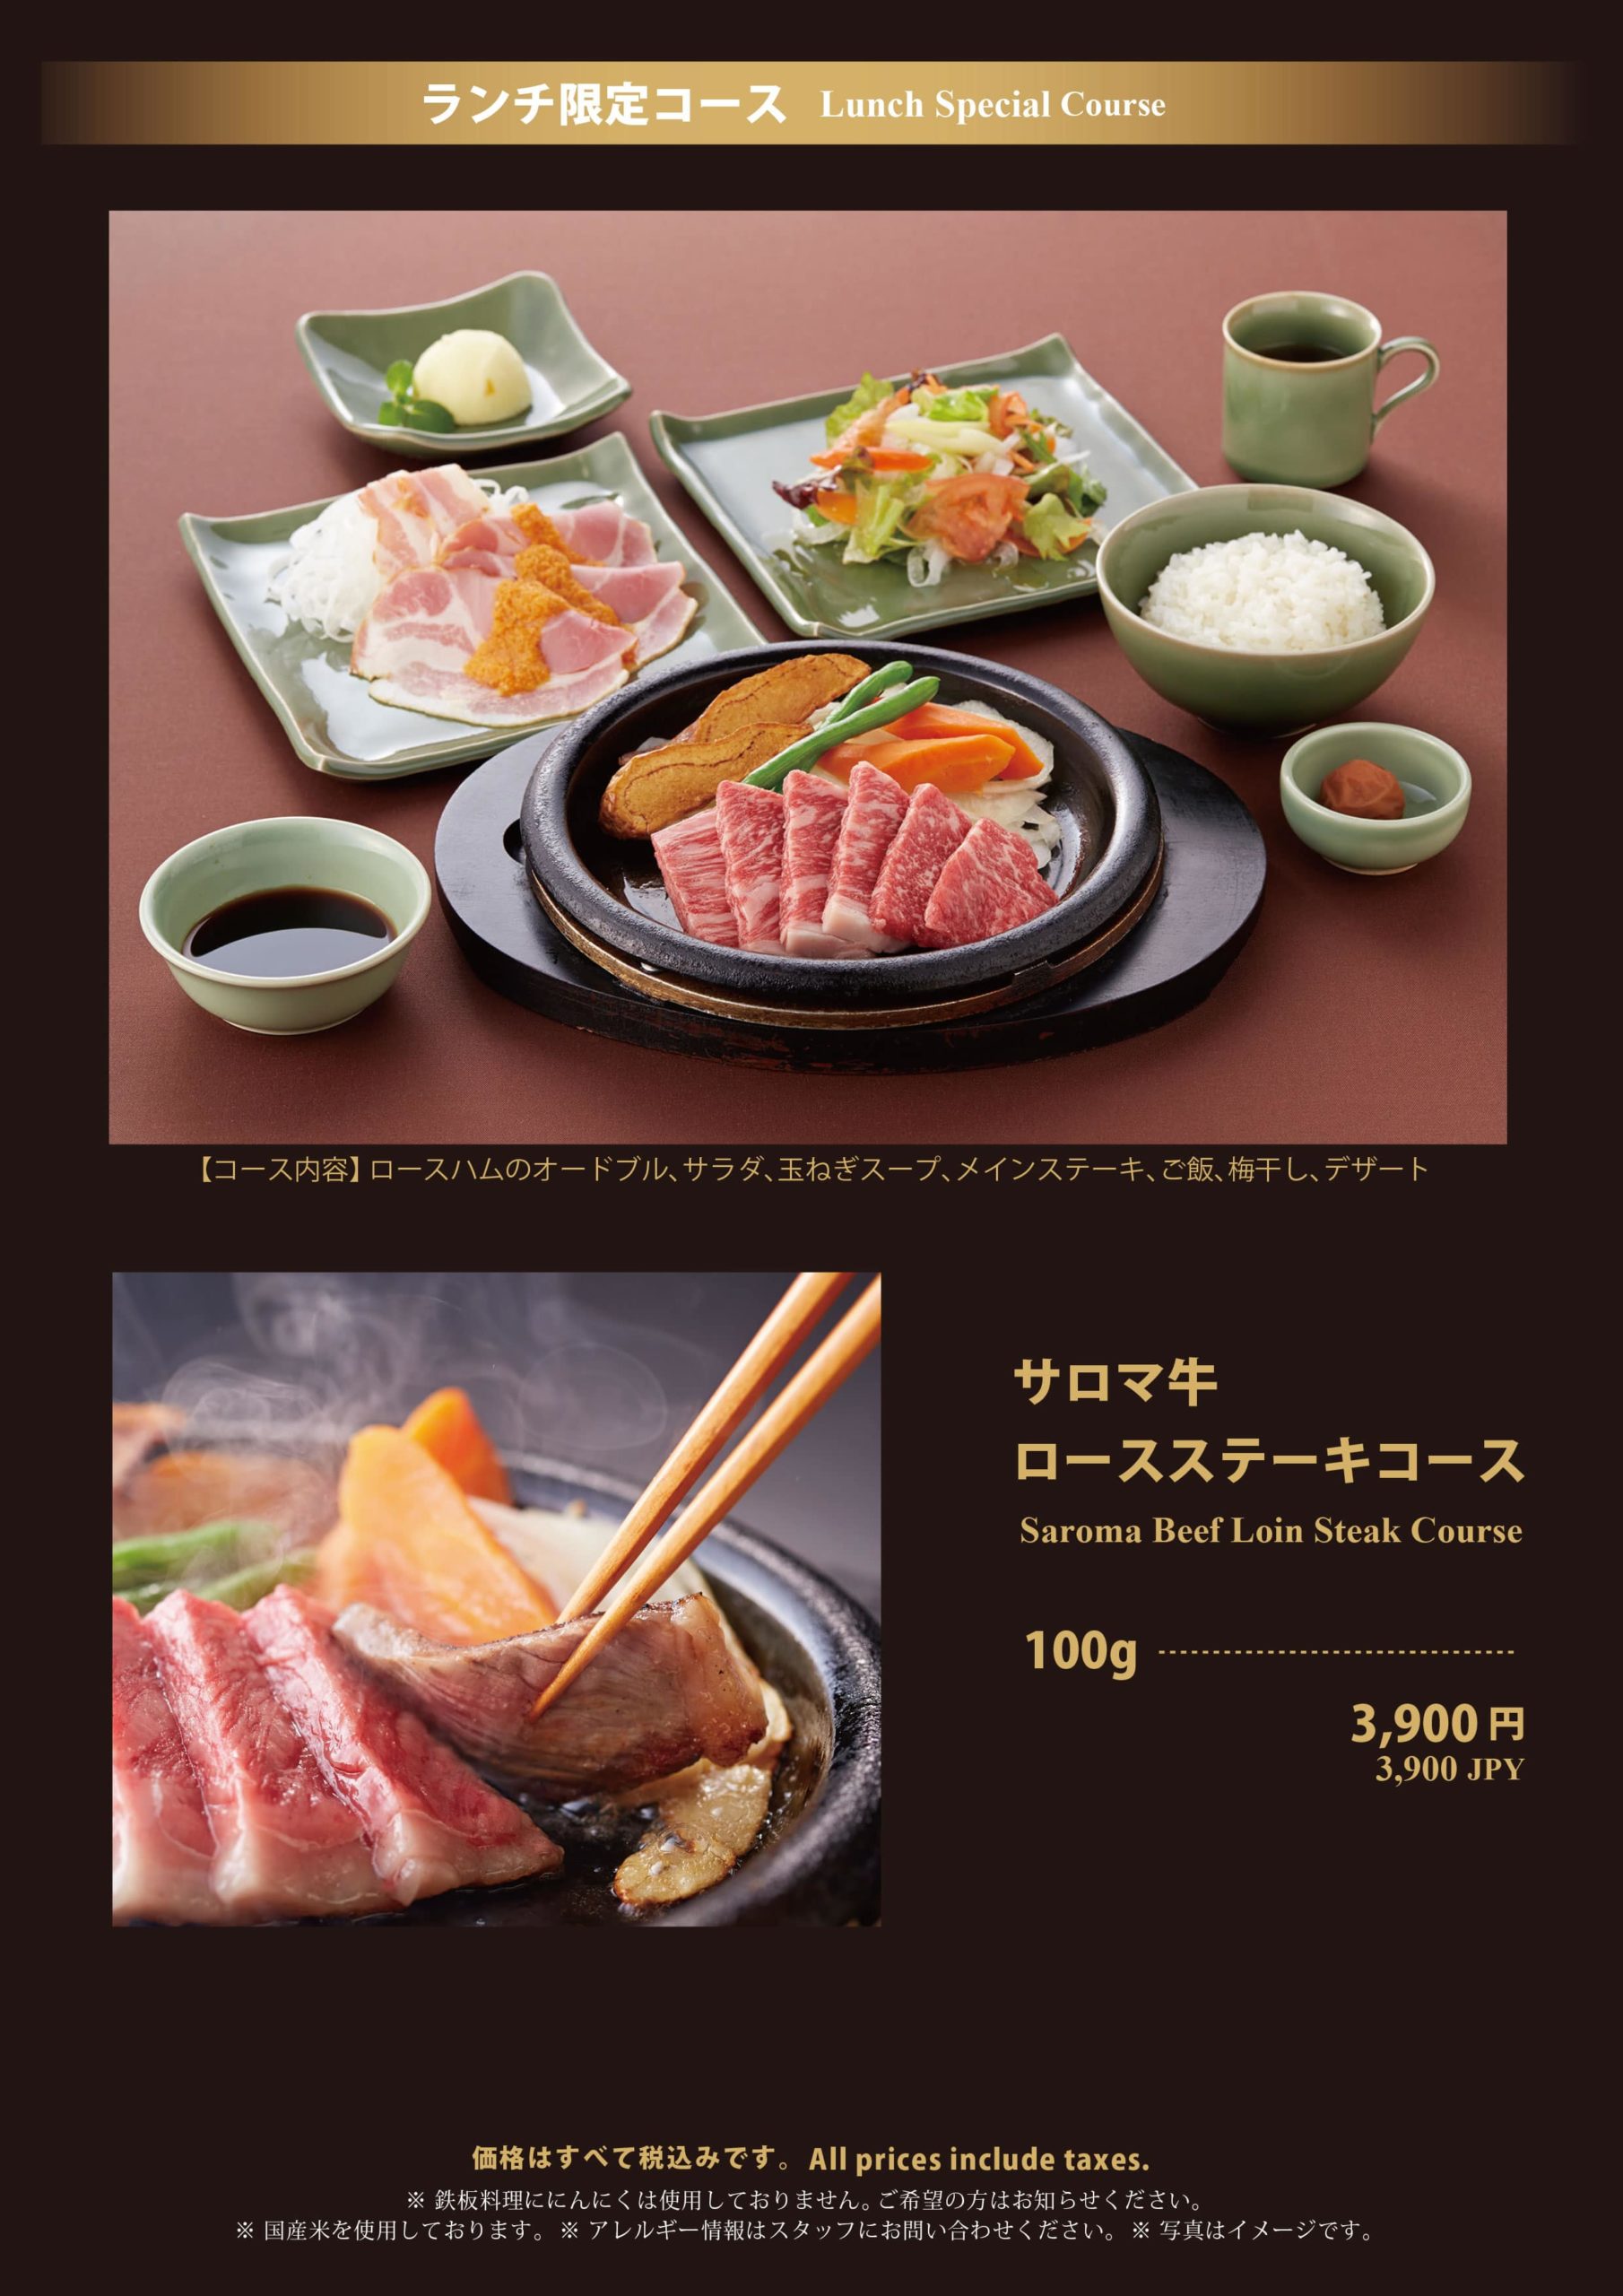 大丸神戸レストラン ランチ サロマ牛ロースステーキコース